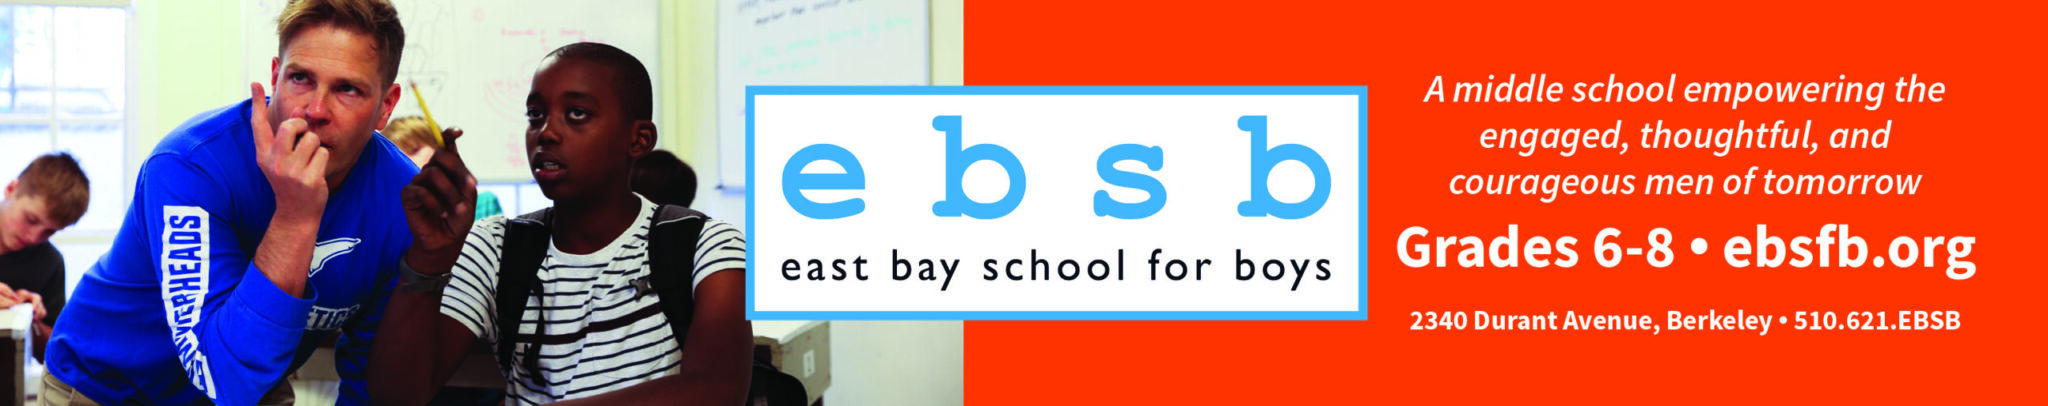 East Bay School for Boys